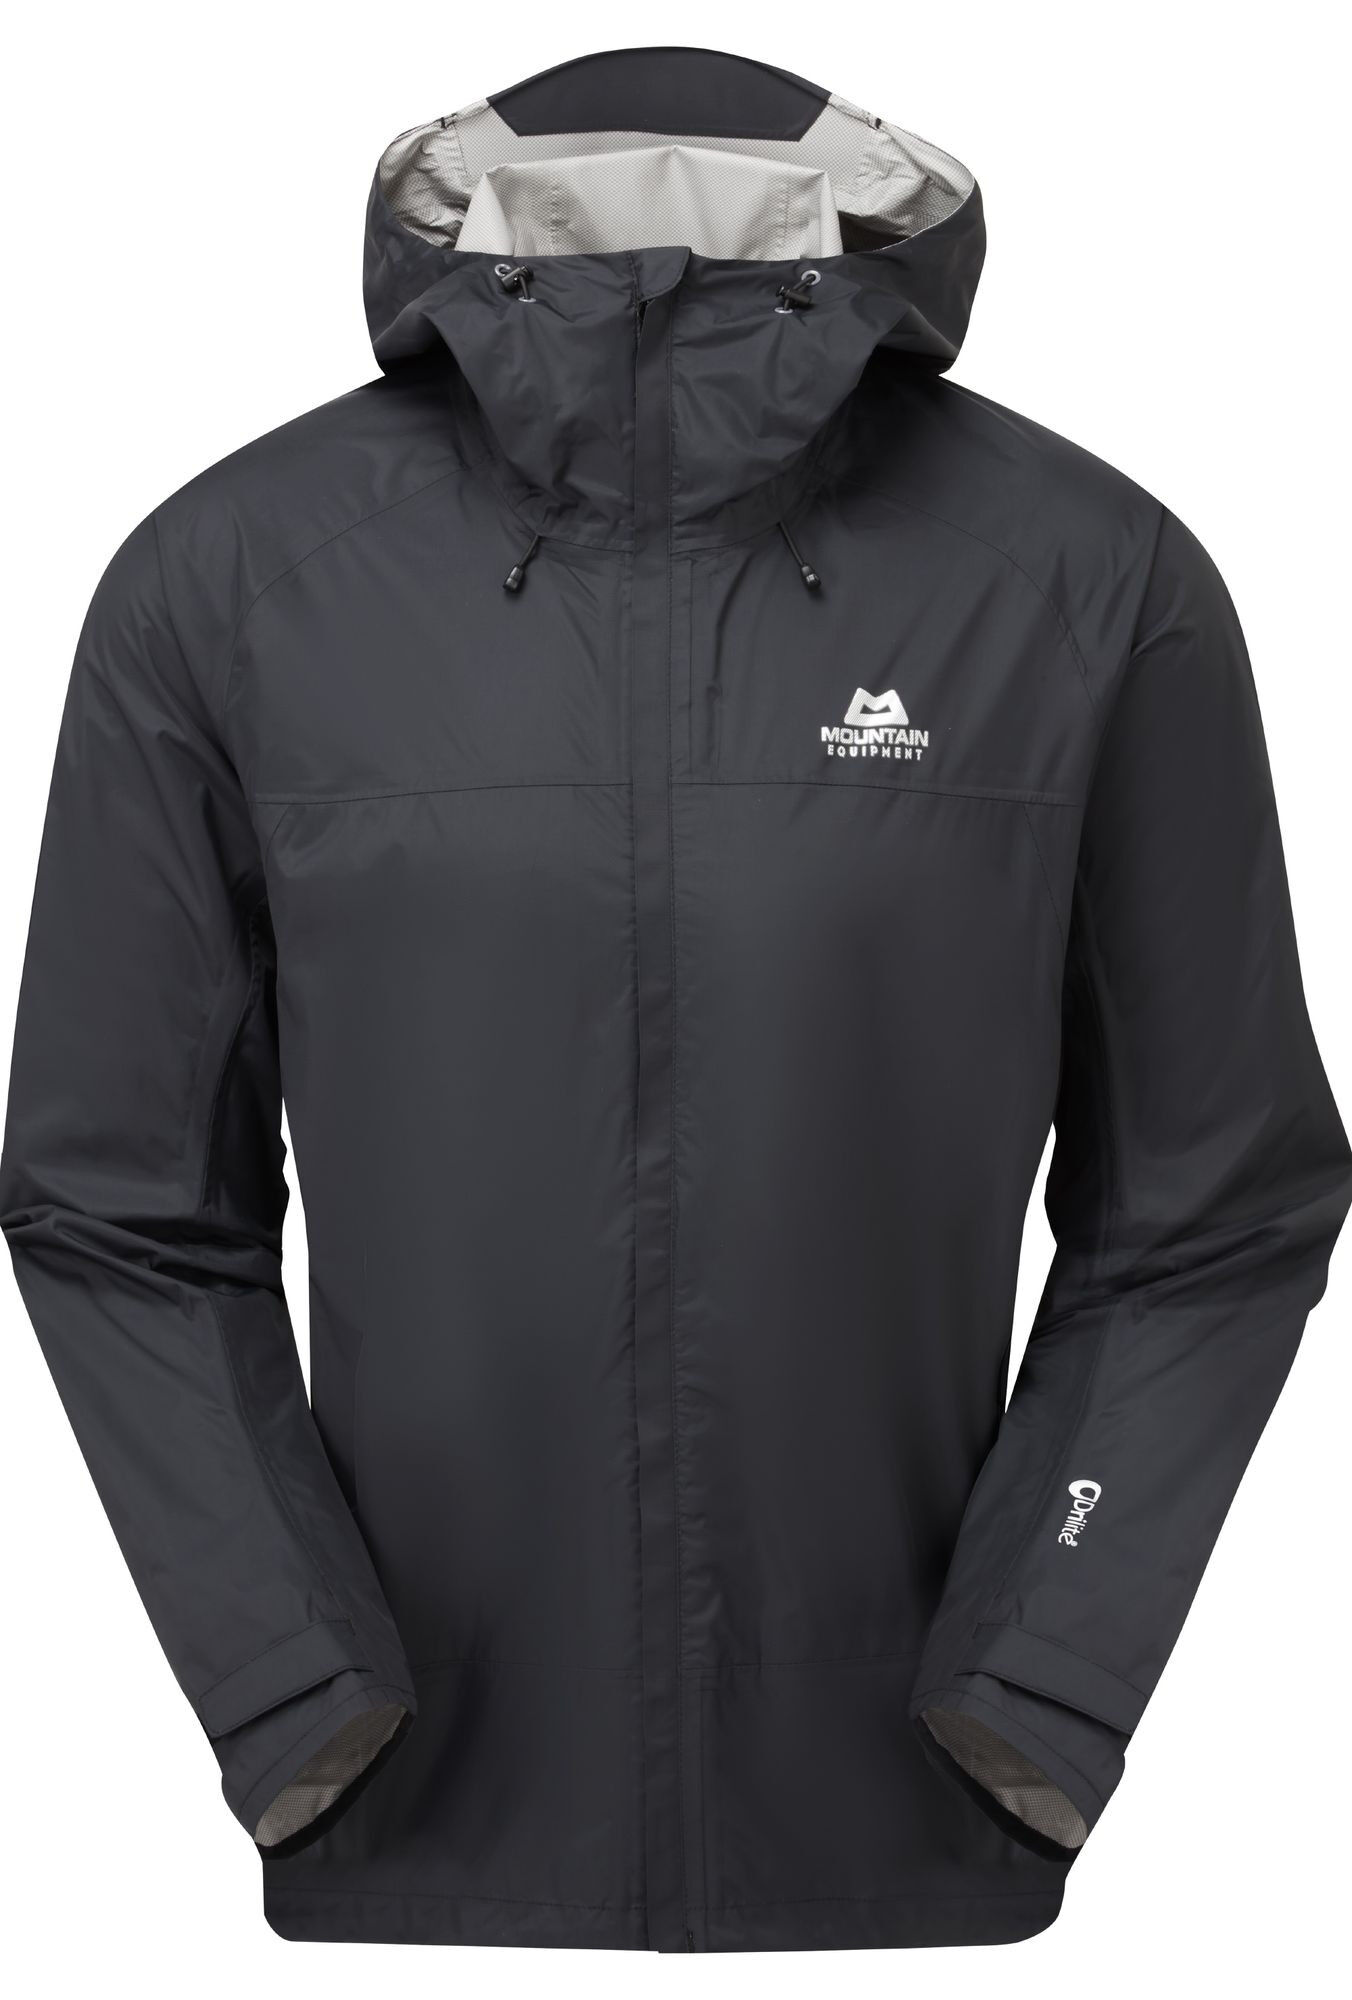 Mountain Equipment Zeno Jacket - Waterproof jacket - Men's | Hardloop